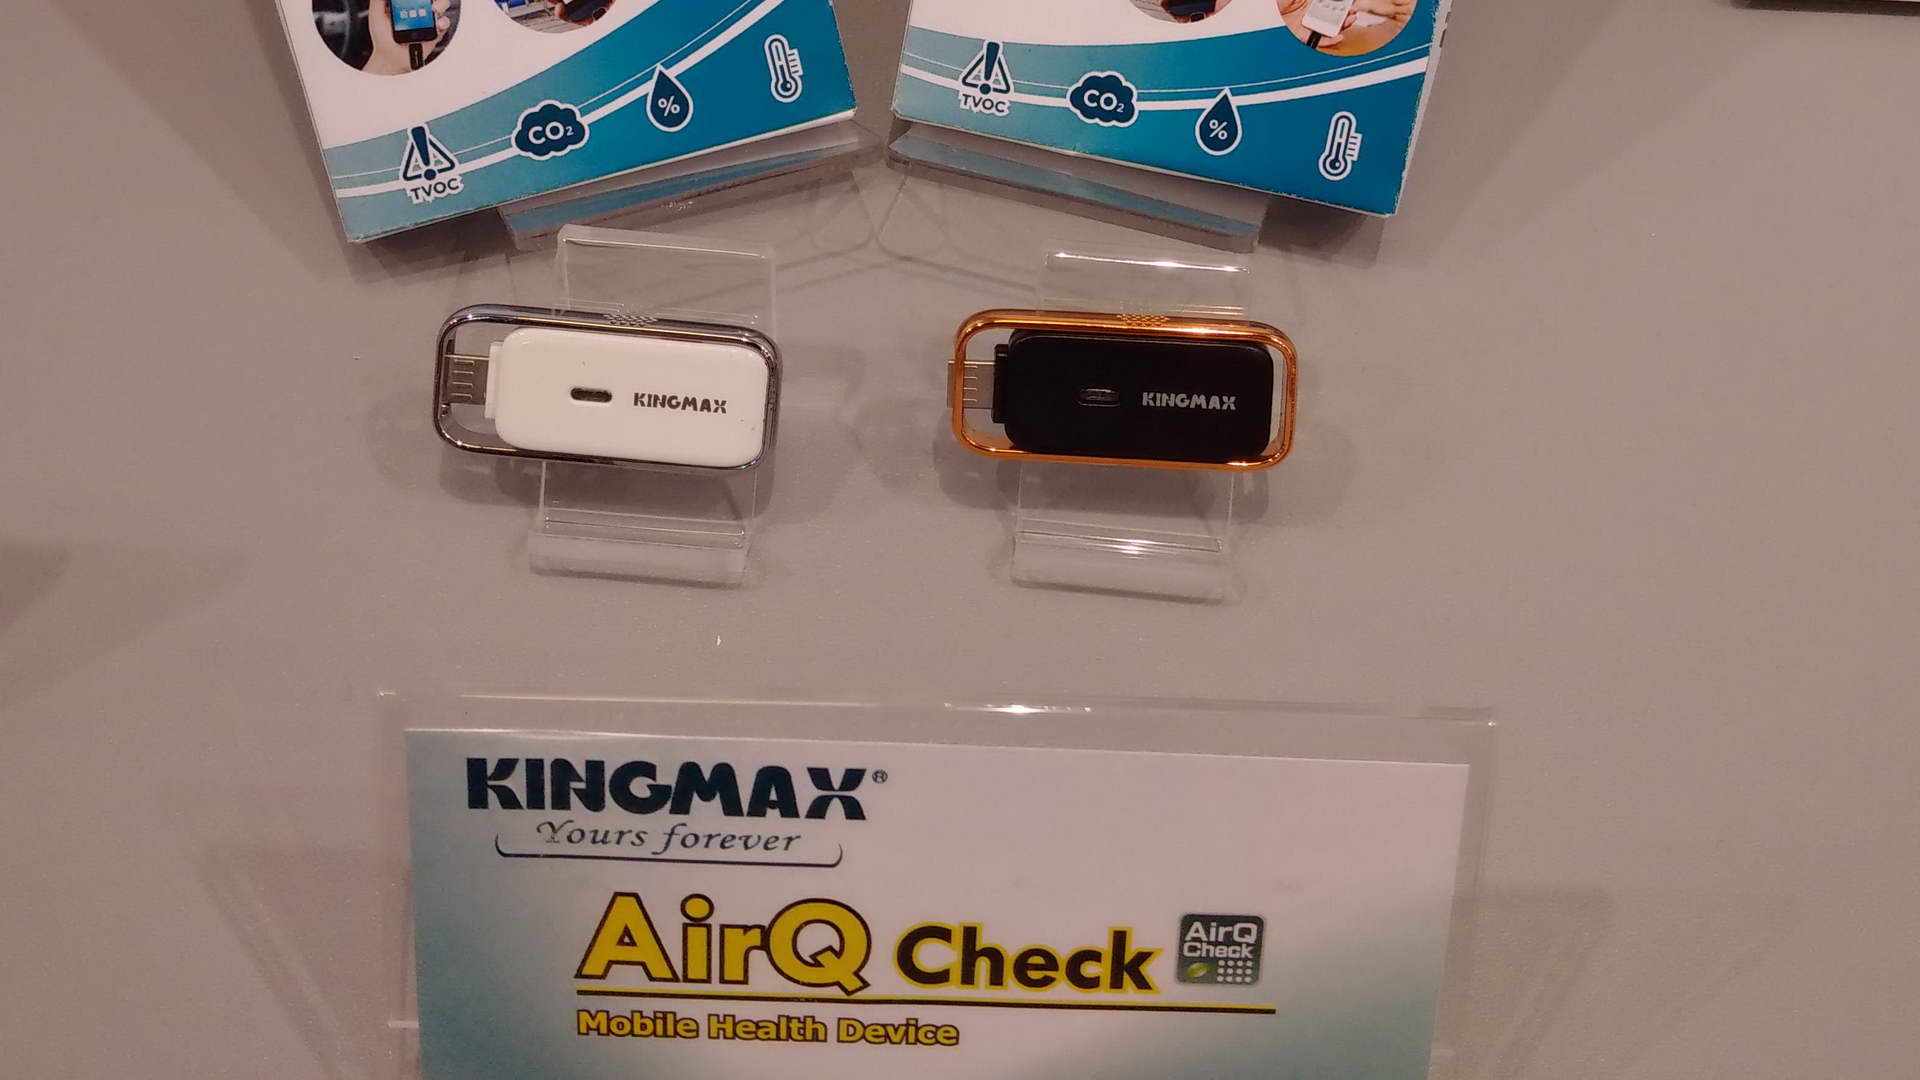 Kingmax giới thiệu thiết bị kiểm tra chất lượng không khí AirQ